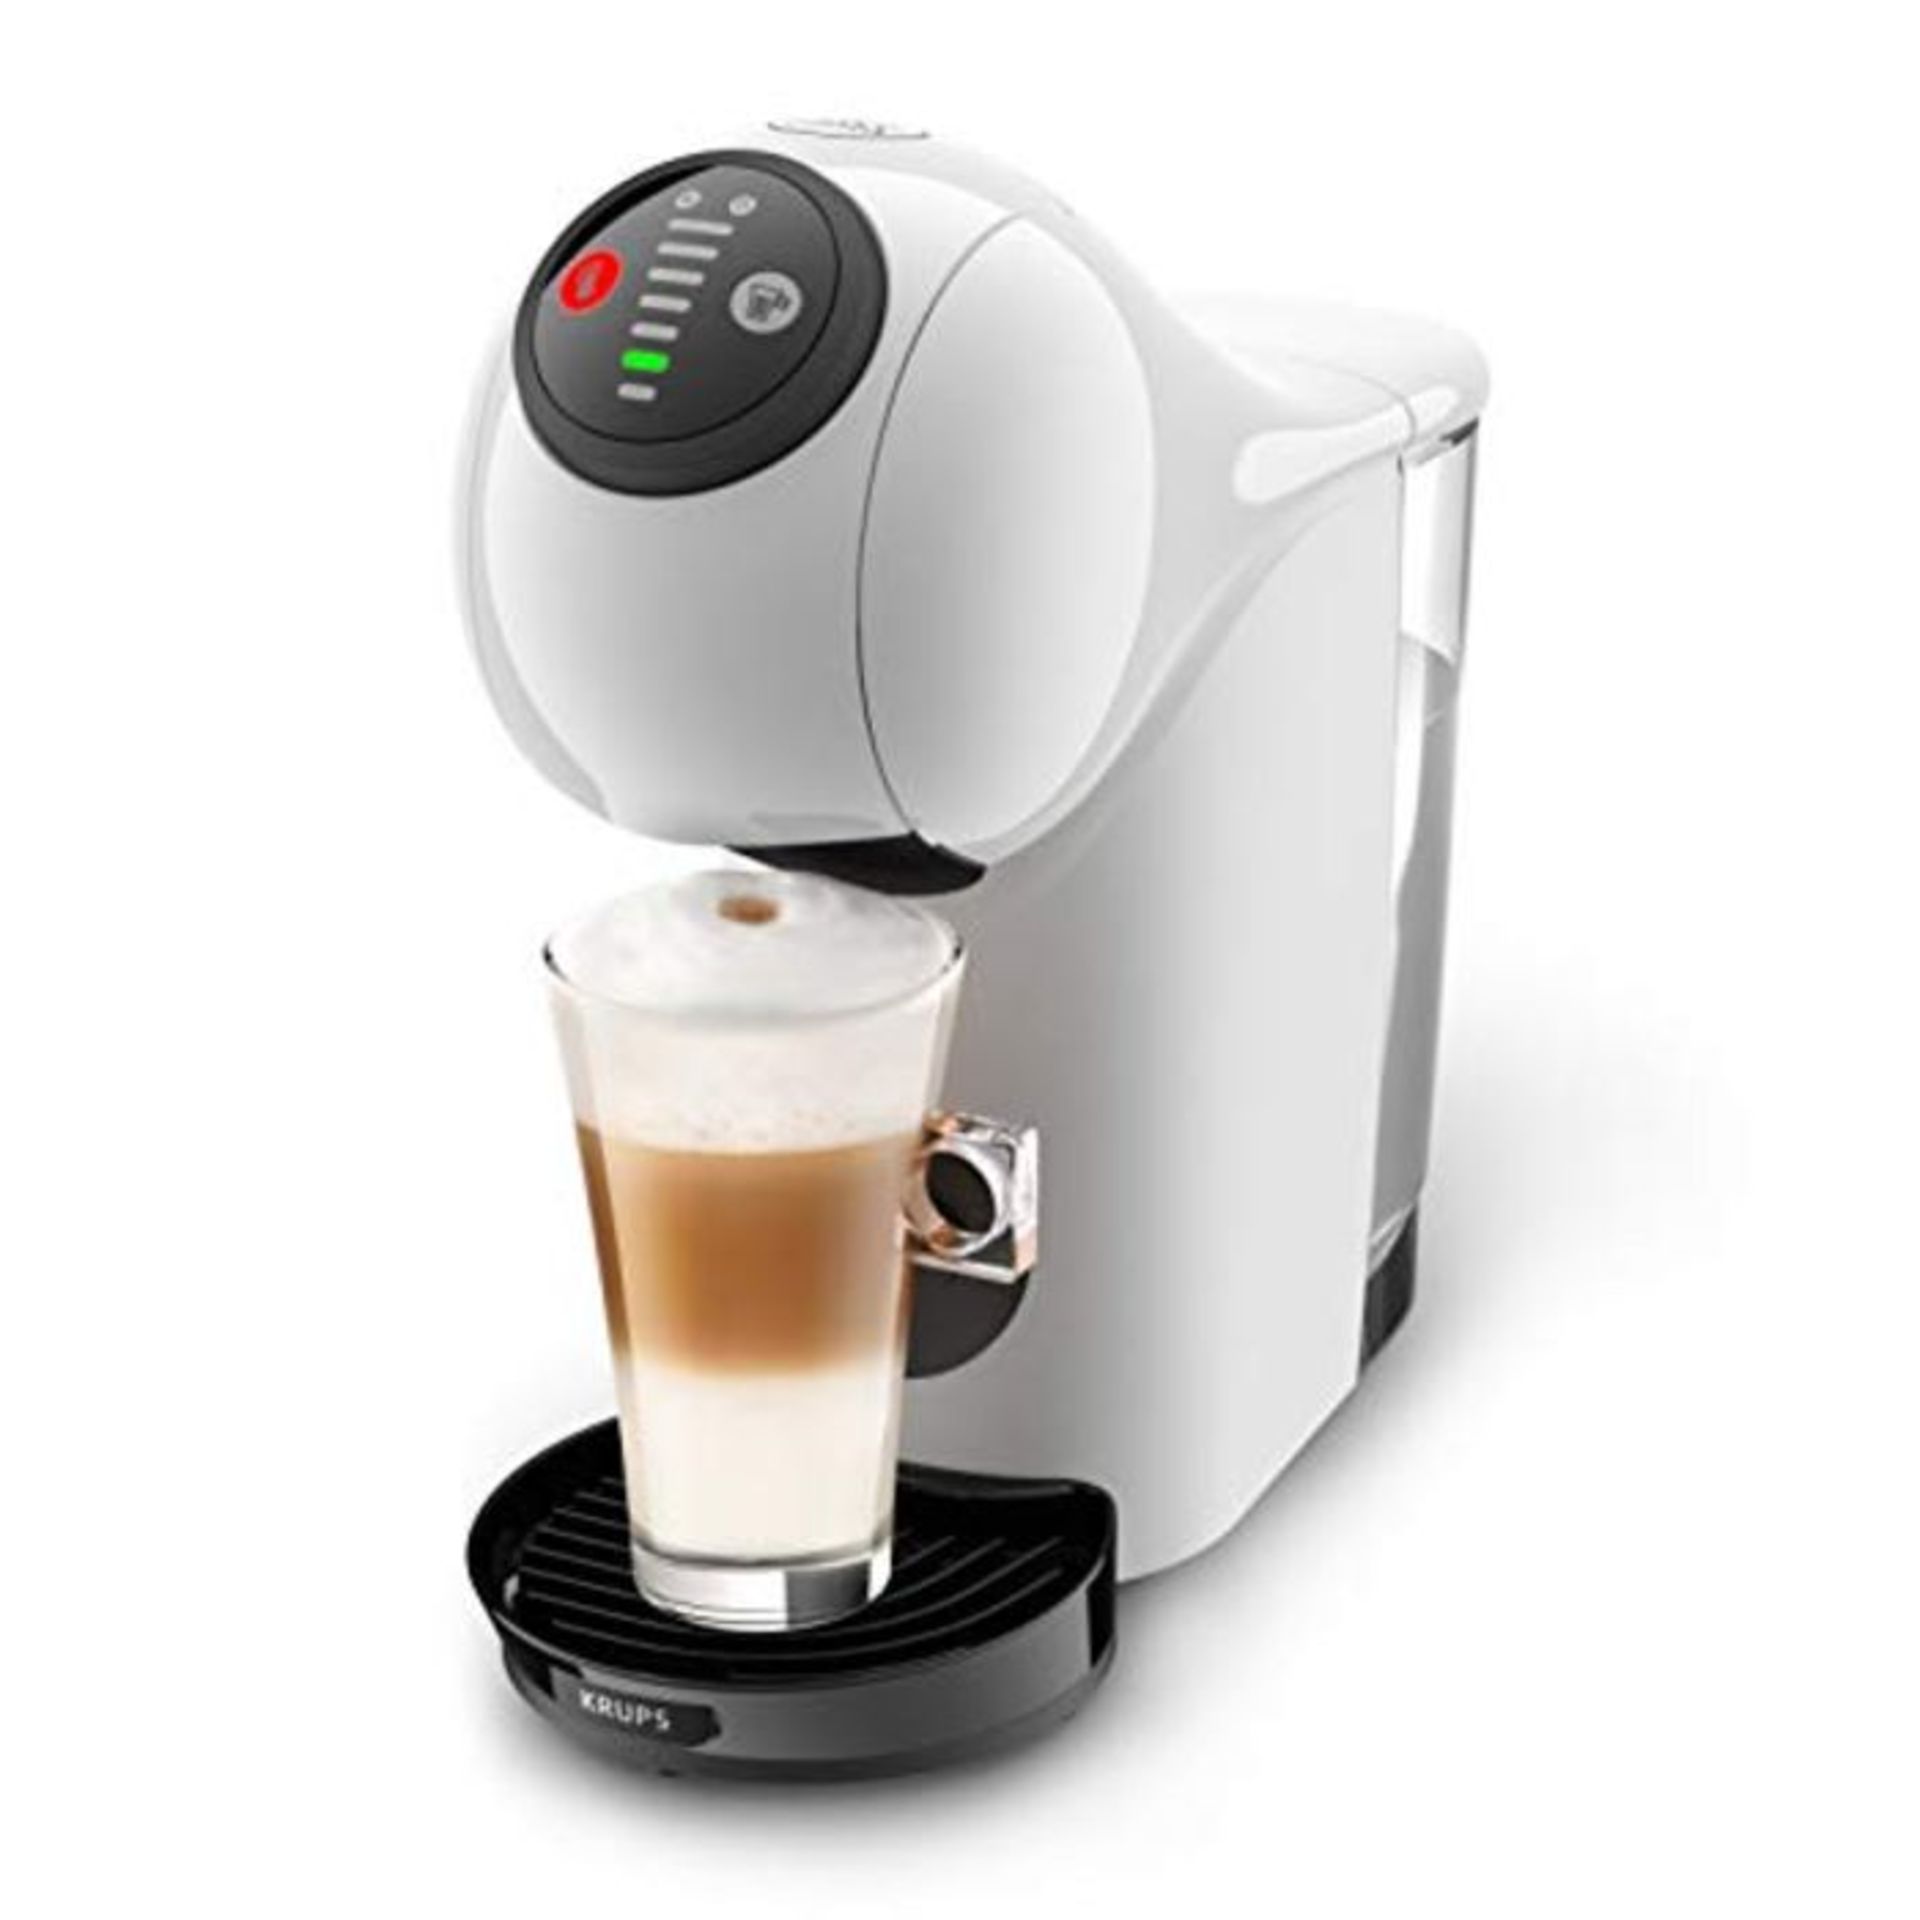 RRP £84.00 [CRACKED] NESCAFE Dolce Gusto Genio S Automatic Coffee Machine White by Krups